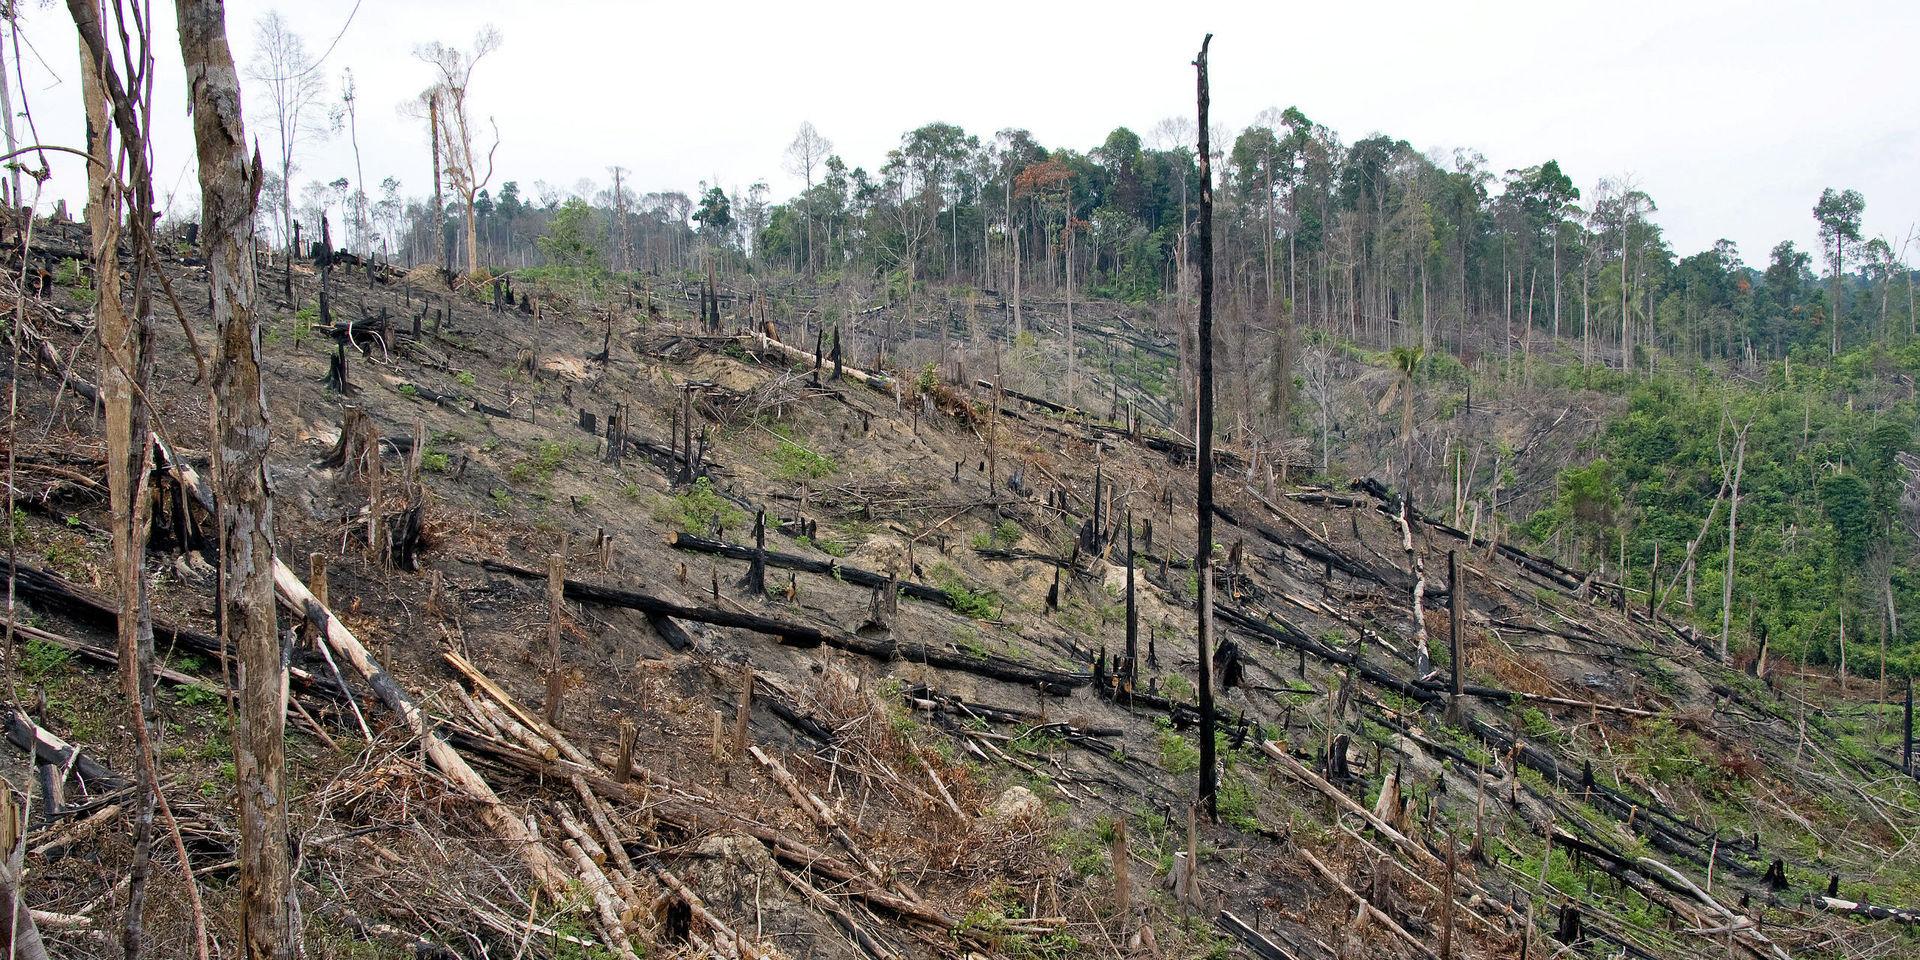 På ön Sumatra i Indonesien har stora arealer av regnskog huggits ner de senaste 30 åren, vilket är ett stort hot mot många växt- och djurarter.